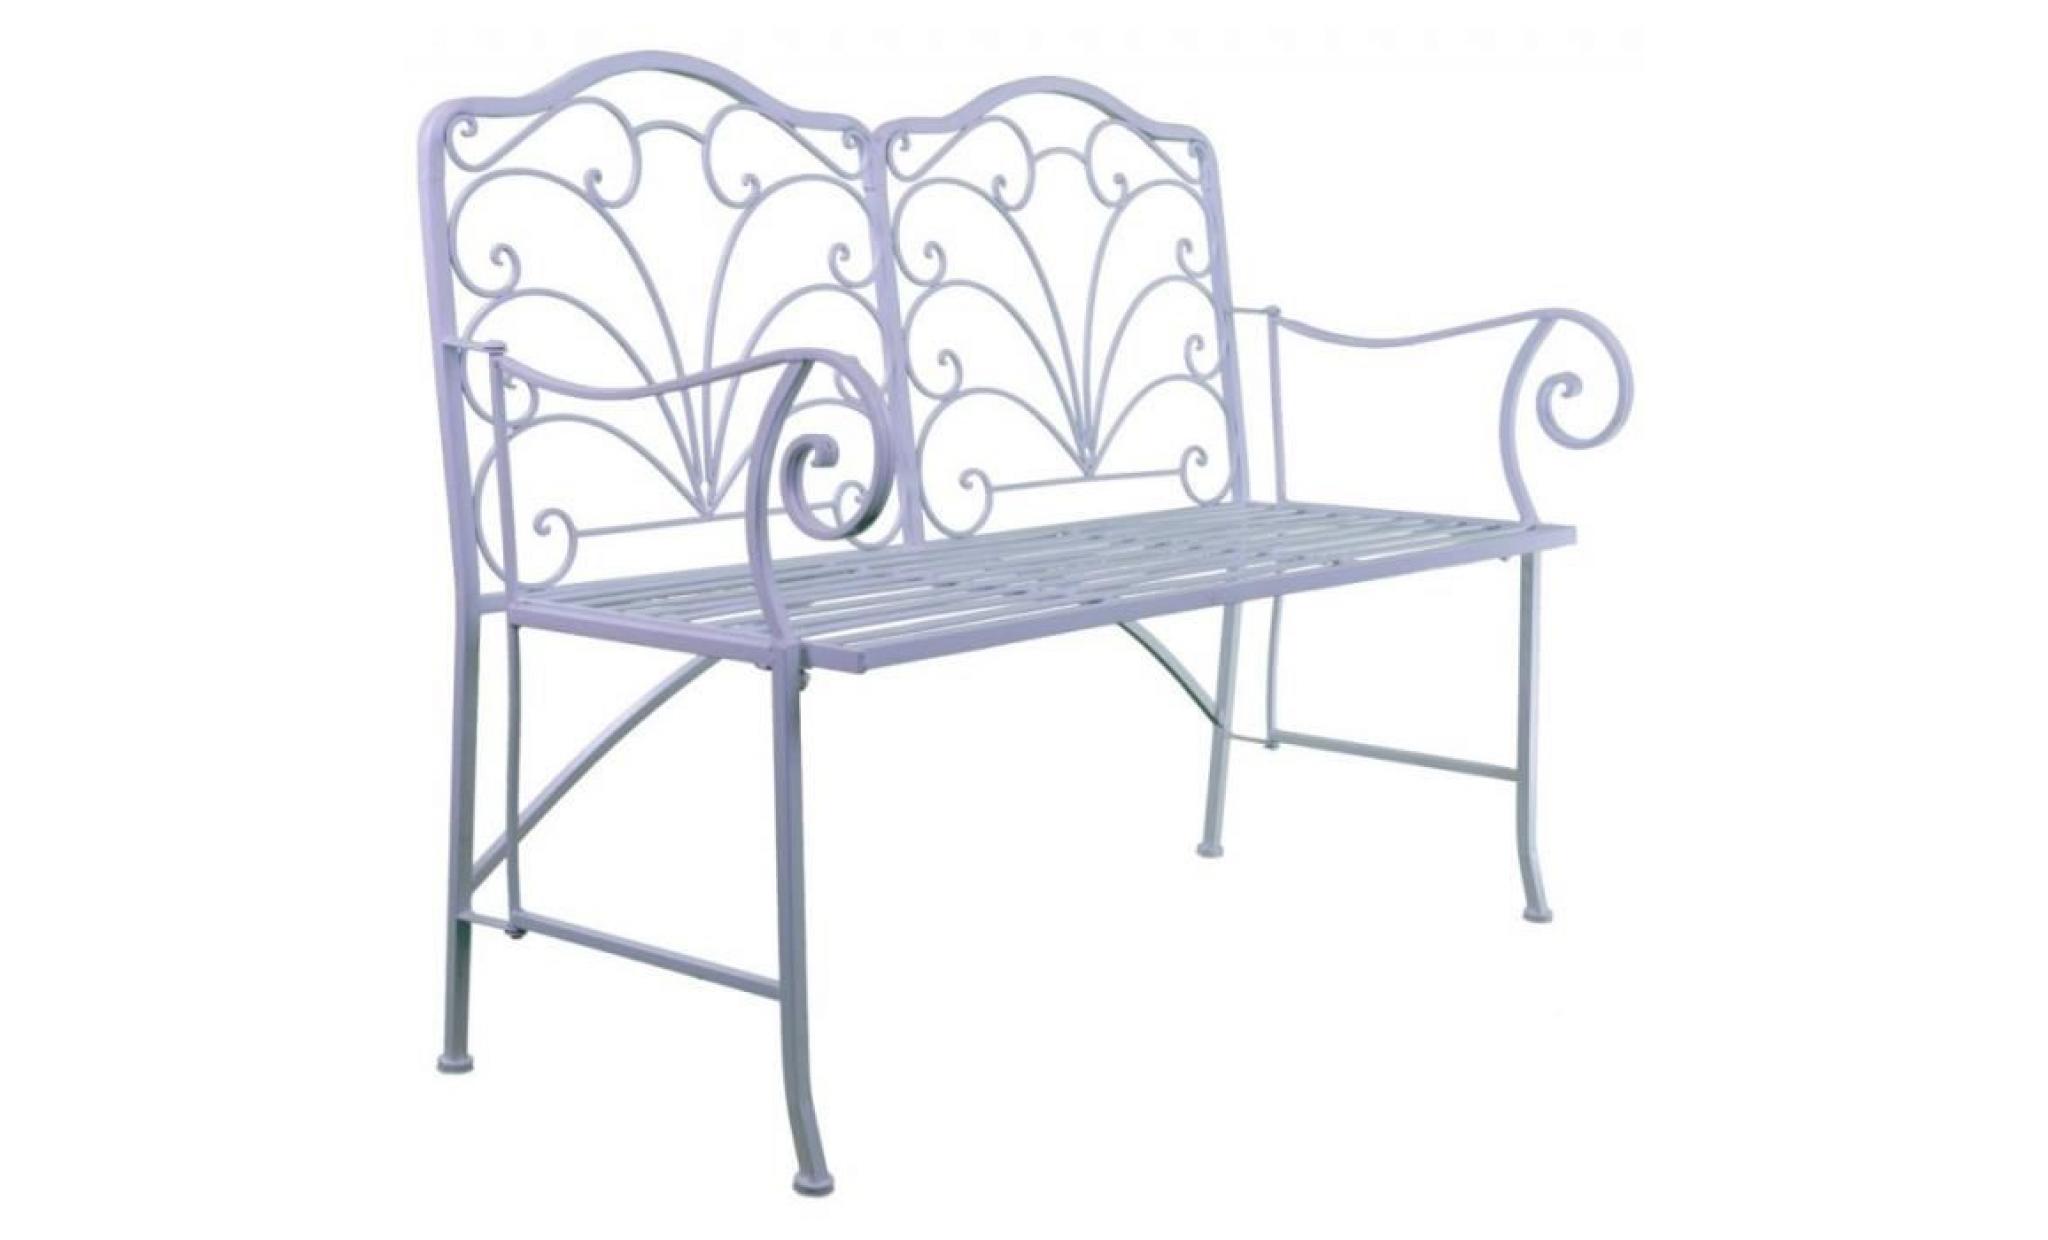 chaise double banc pliable banquette de jardin en fer noir assise 2 places 52x92x111cm pas cher